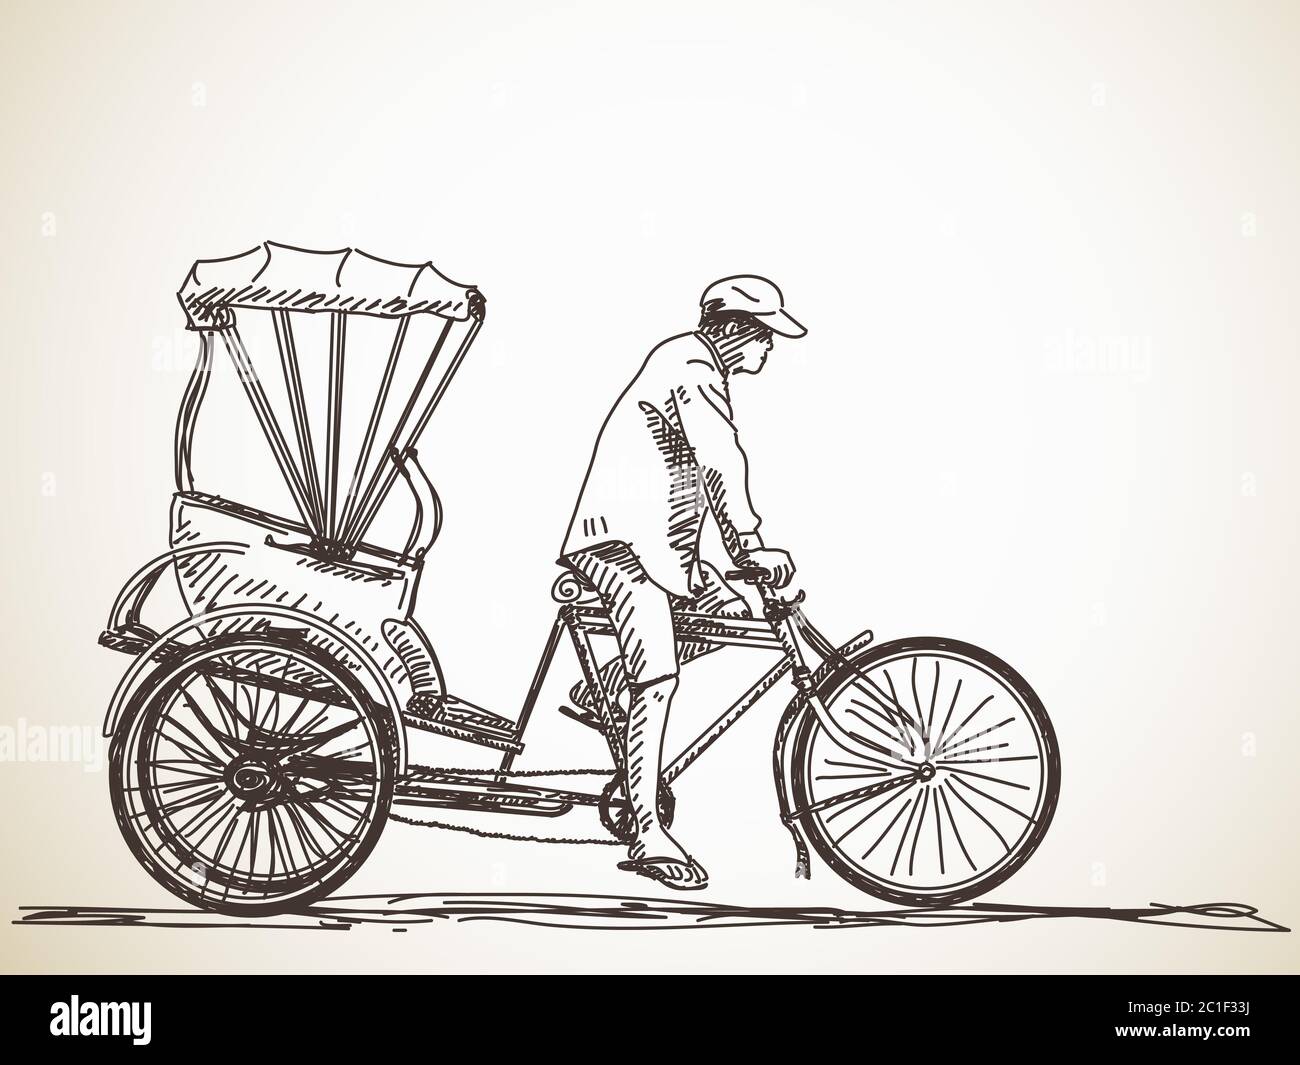 Indian Auto rickshaw sketch  Tarun Samuel  Flickr